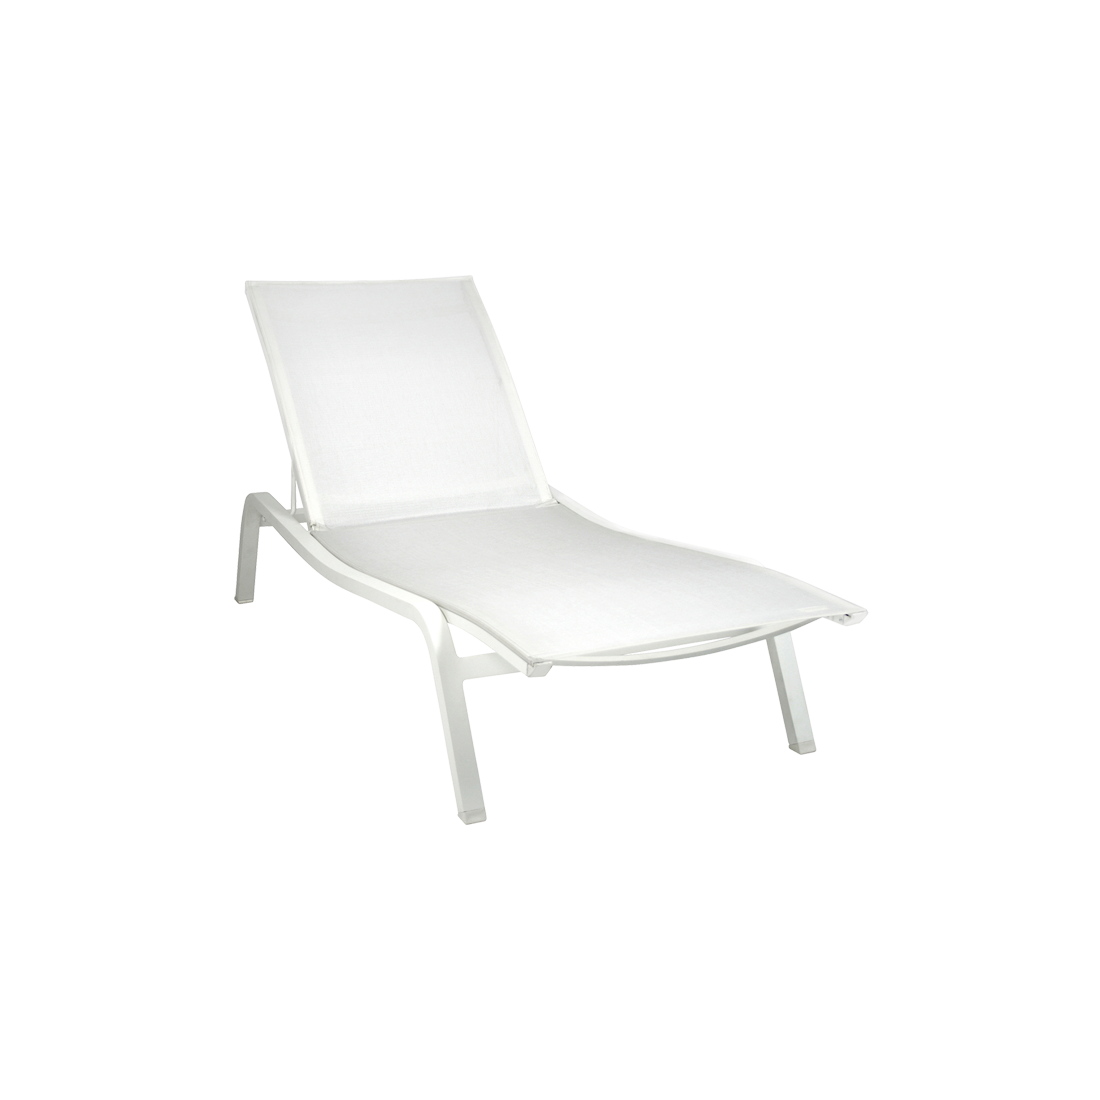 bain de soleil fermob, bain de soleil, chaise longue en toile, chaise longue fermob, chaise longue blanche